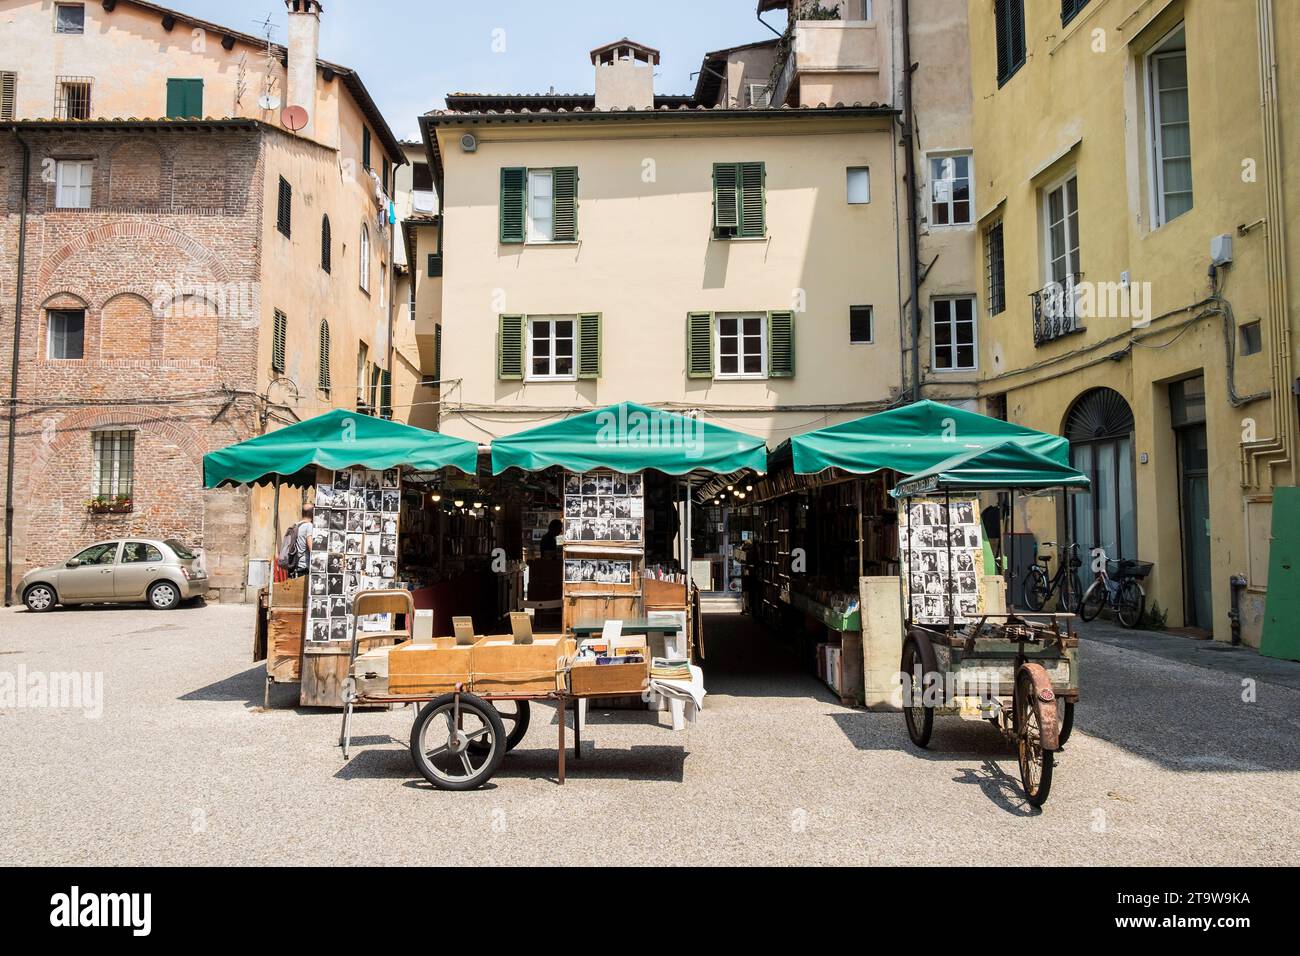 Italy, Tuscany, Lucca, Piazzetta del libro, book square Stock Photo